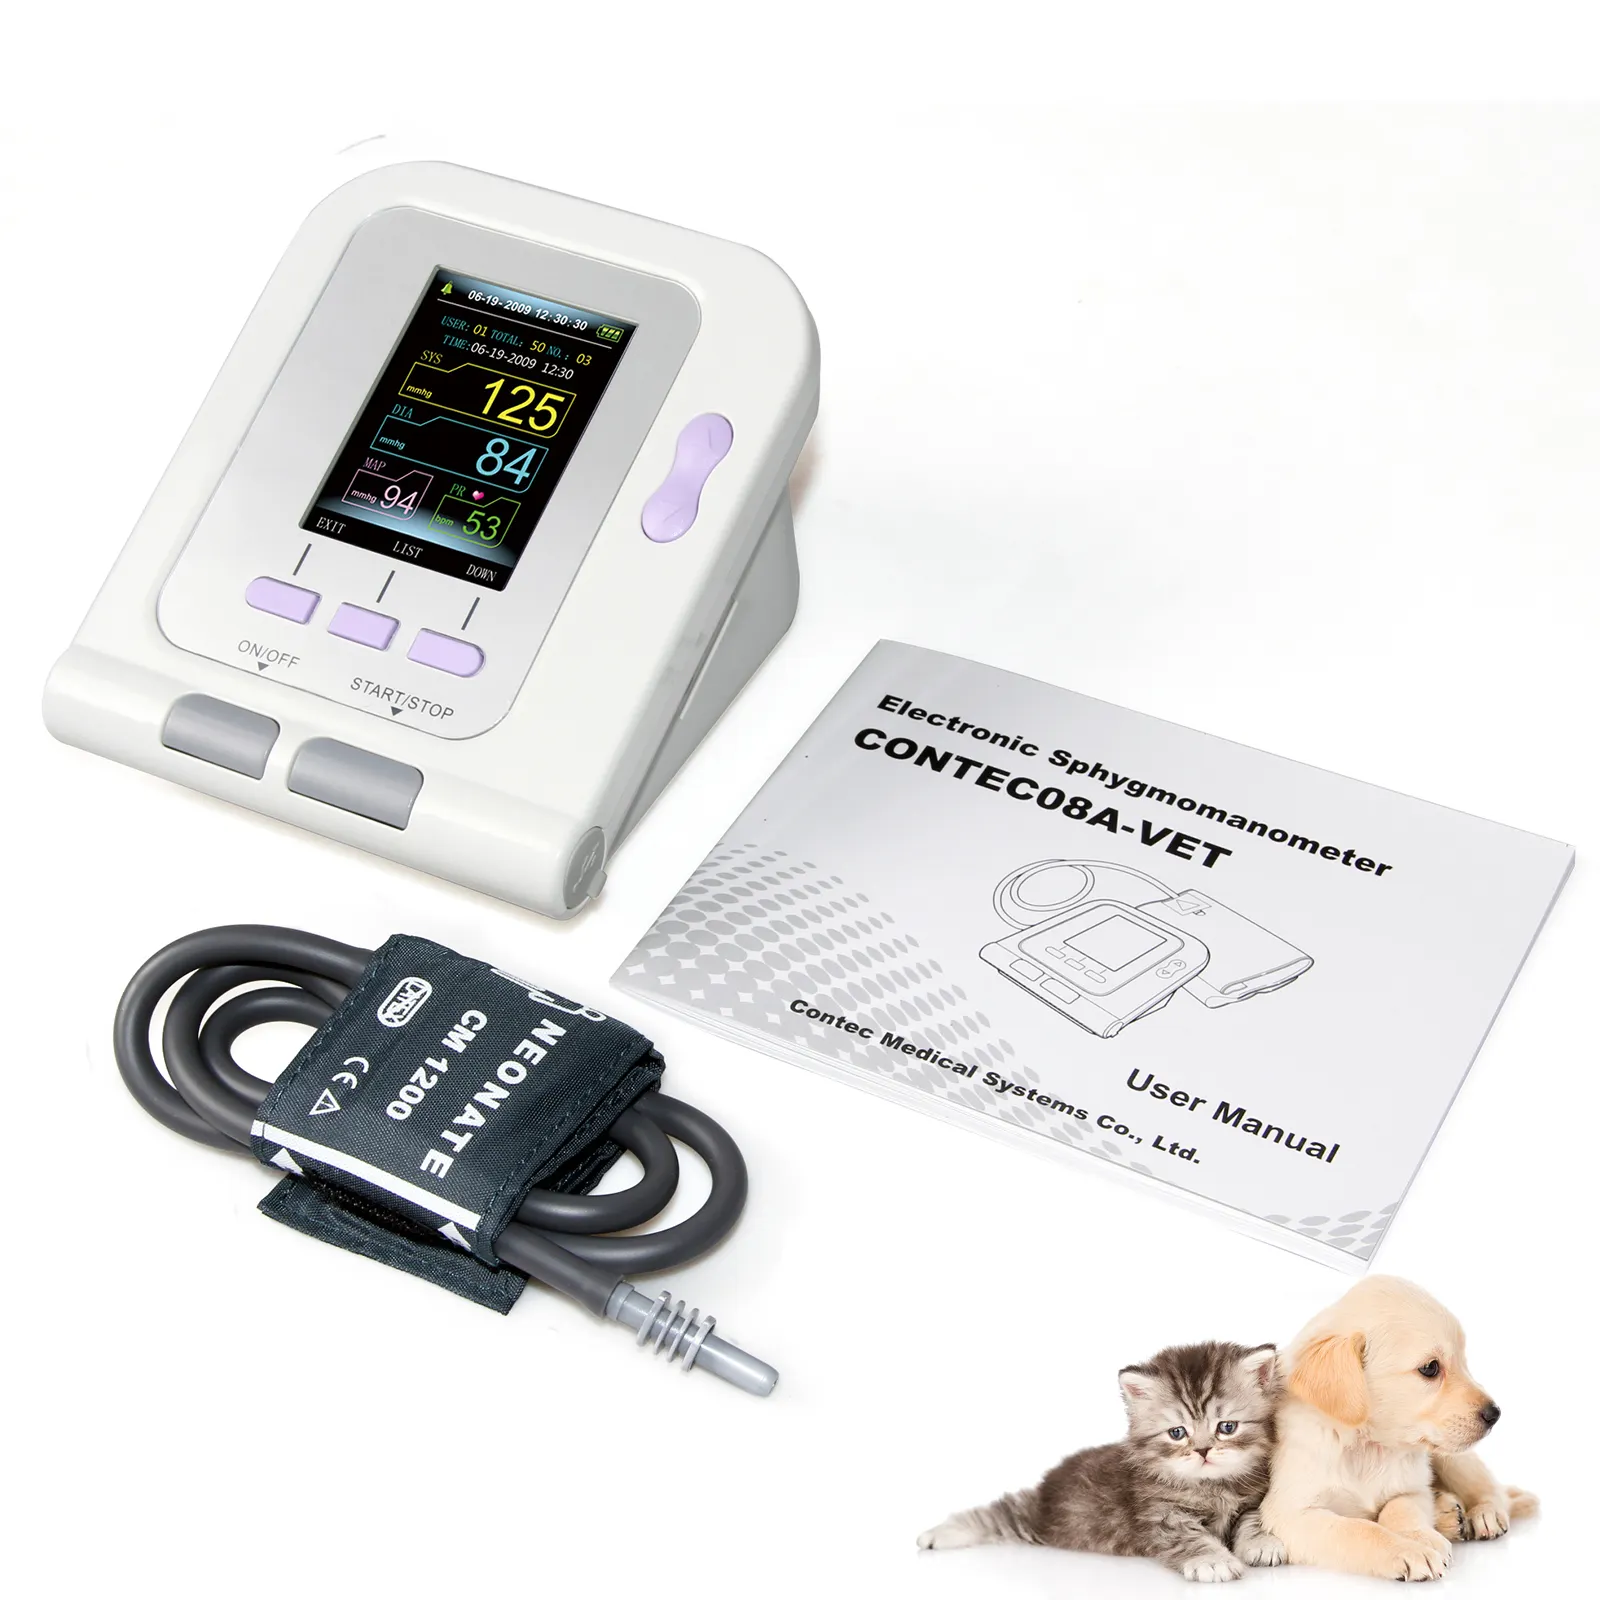 CONTEC Contec08A-VET цифровой Ветеринарный монитор артериального давления для животных, ветеринарная клиника